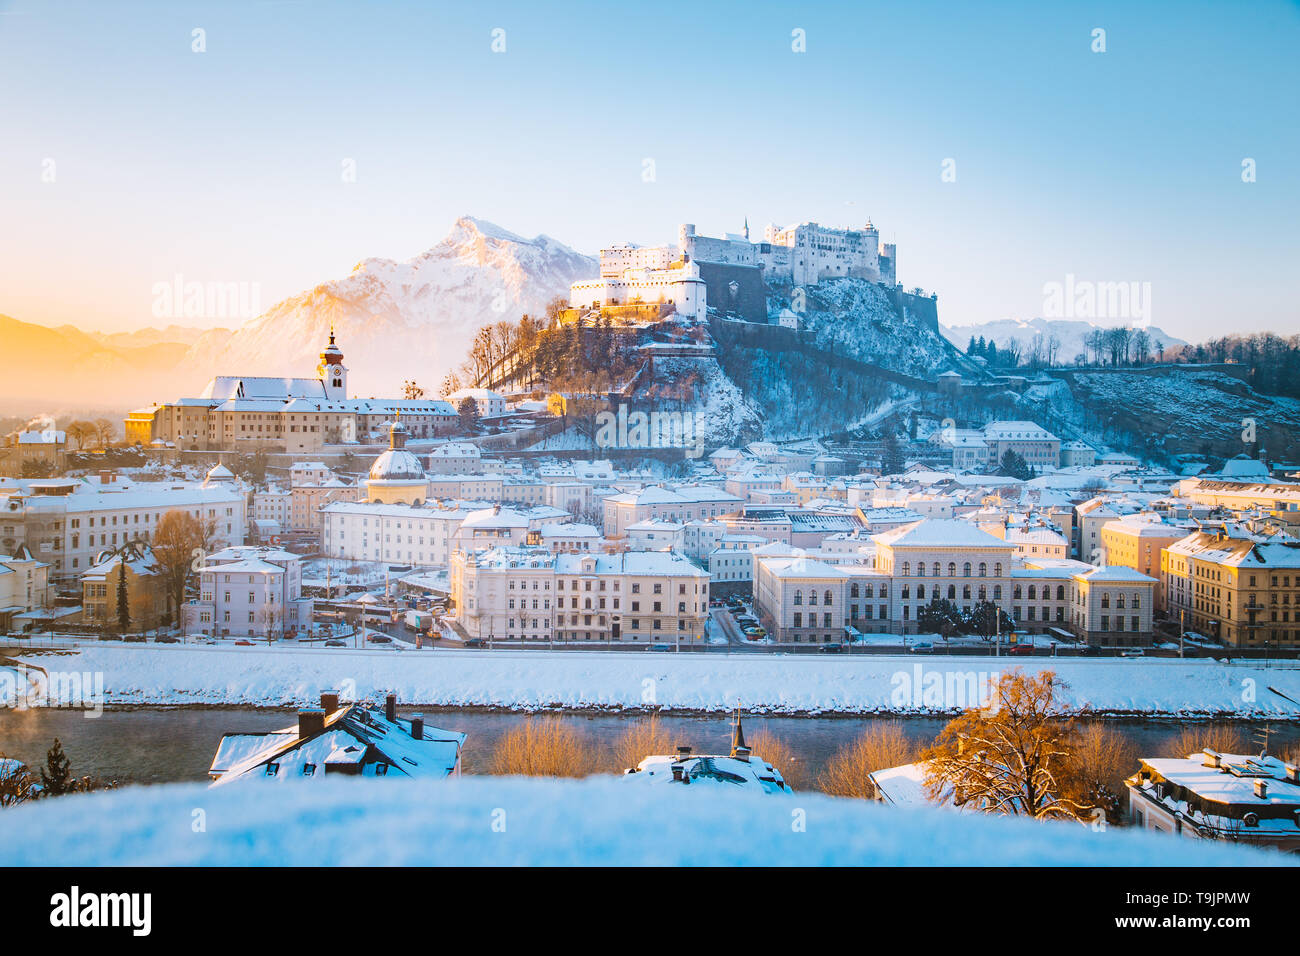 Klassische Ansicht von der historischen Stadt Salzburg mit der berühmten Festung Hohensalzburg und Salzach Fluss im malerischen Morgenlicht bei Sonnenaufgang auf einem schönen c Stockfoto